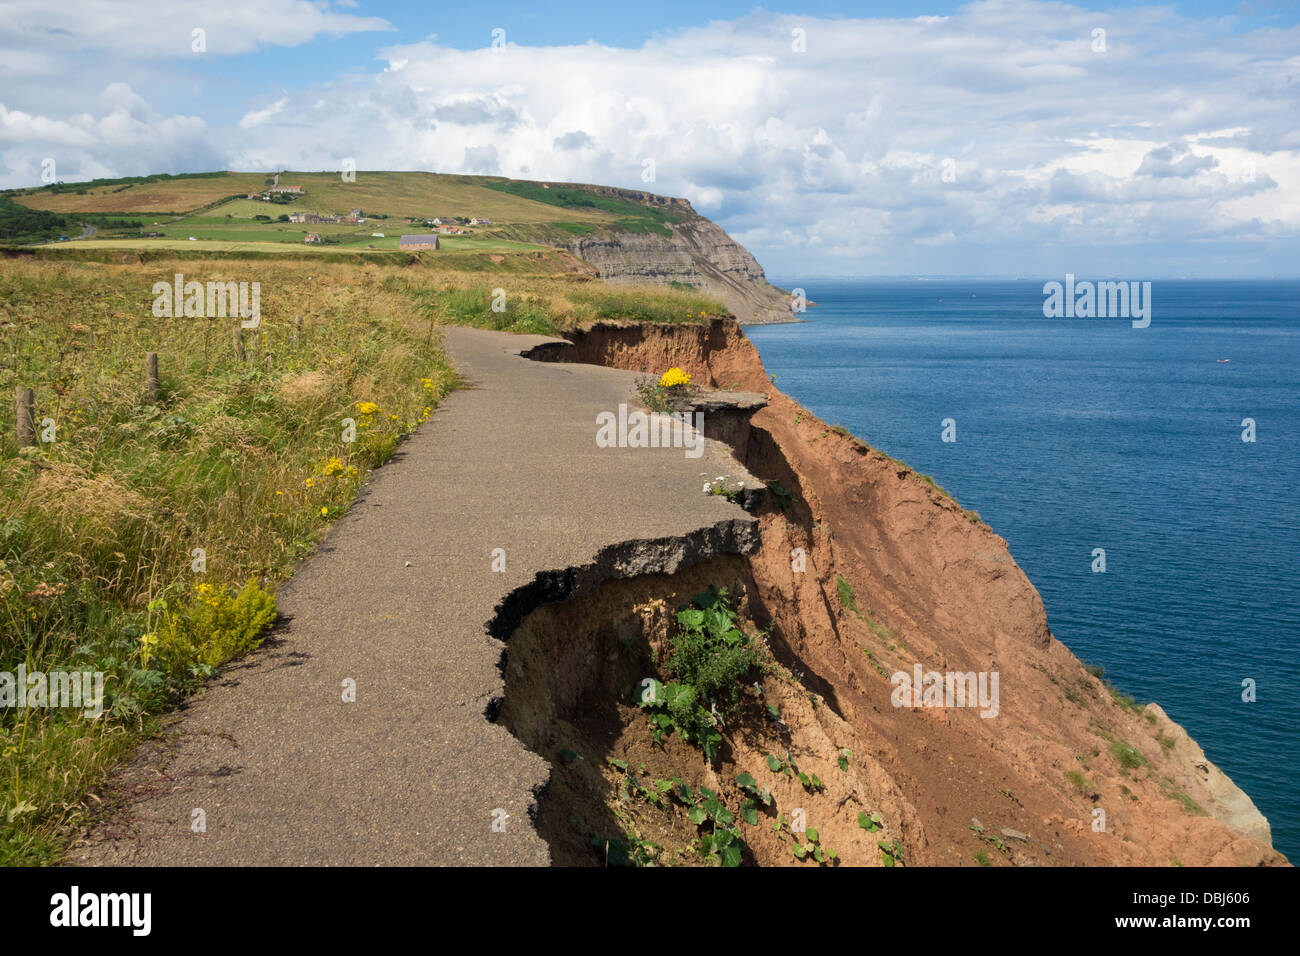 La vieille route côtière s'écroule, tombant en mer à cause de l'érosion côtière des falaises de Boulby sur la côte nord-est de l'Angleterre. ROYAUME-UNI Banque D'Images